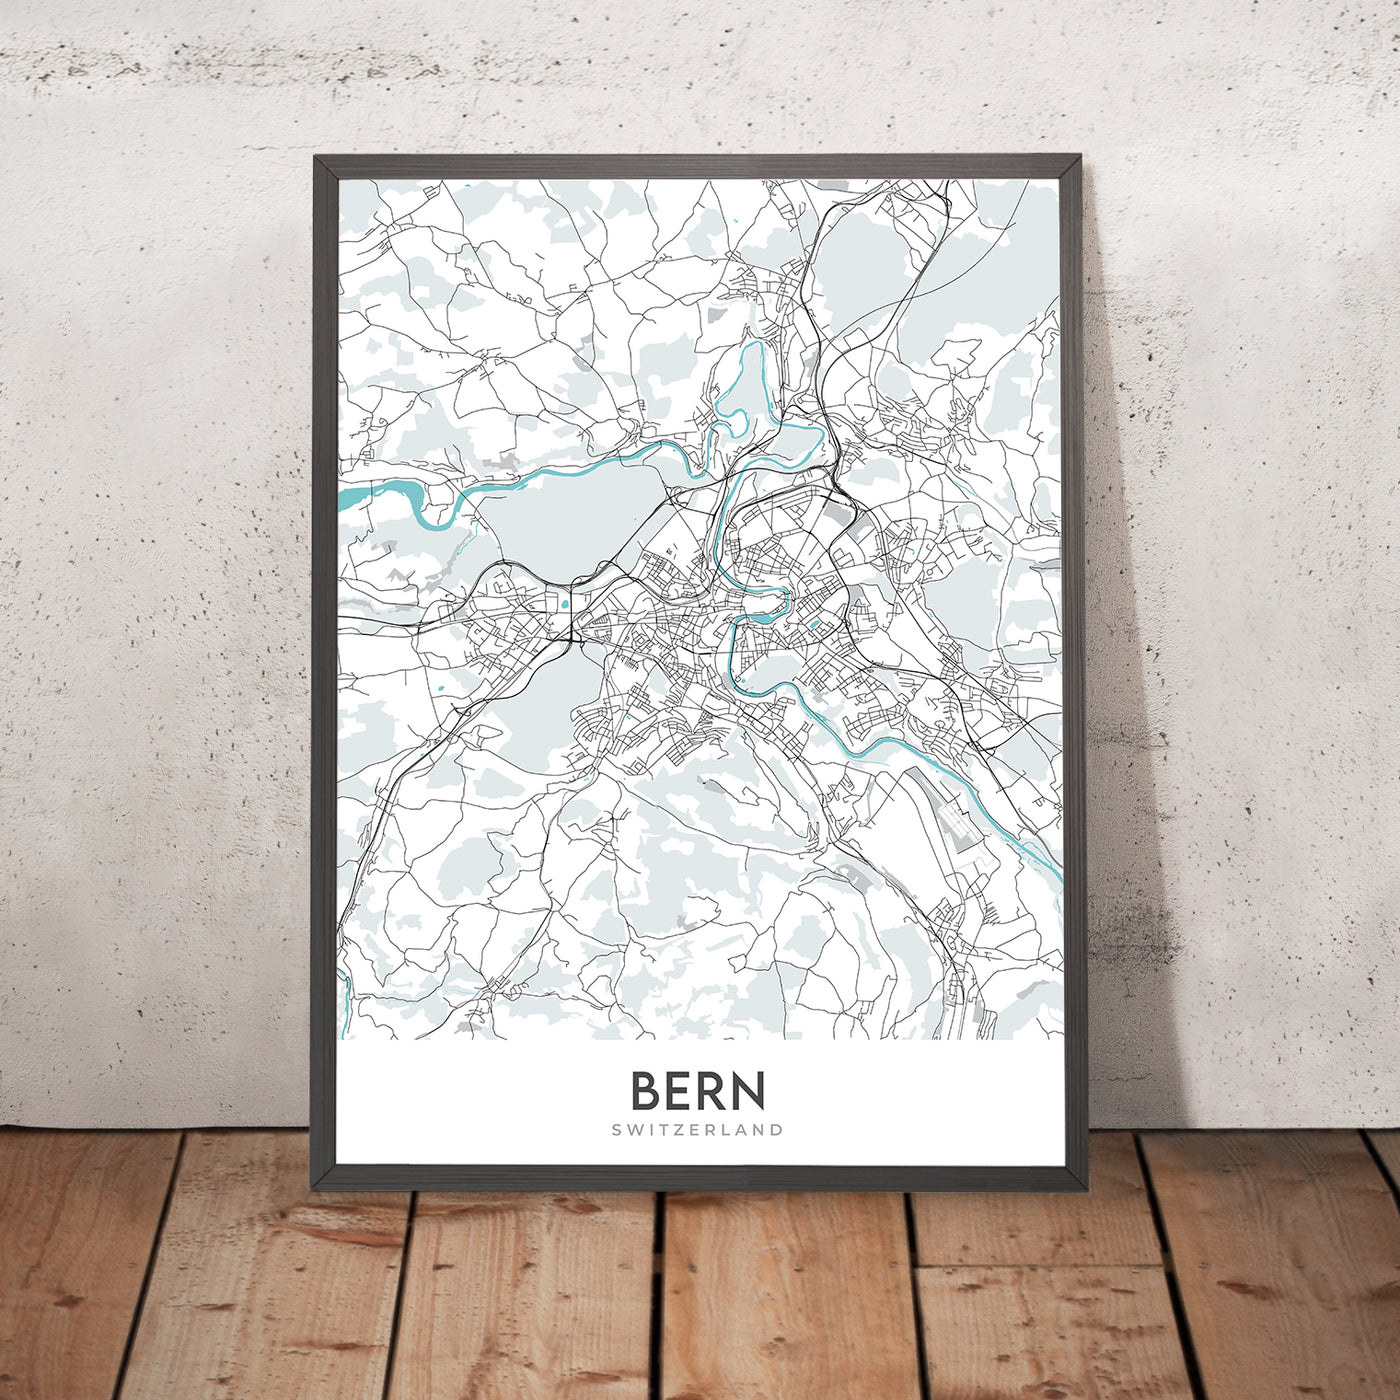 Moderner Stadtplan von Bern, Schweiz: Bundeshaus, Uhrturm, Aare, Breitenrain-Lorraine, Länggasse-Felsenau